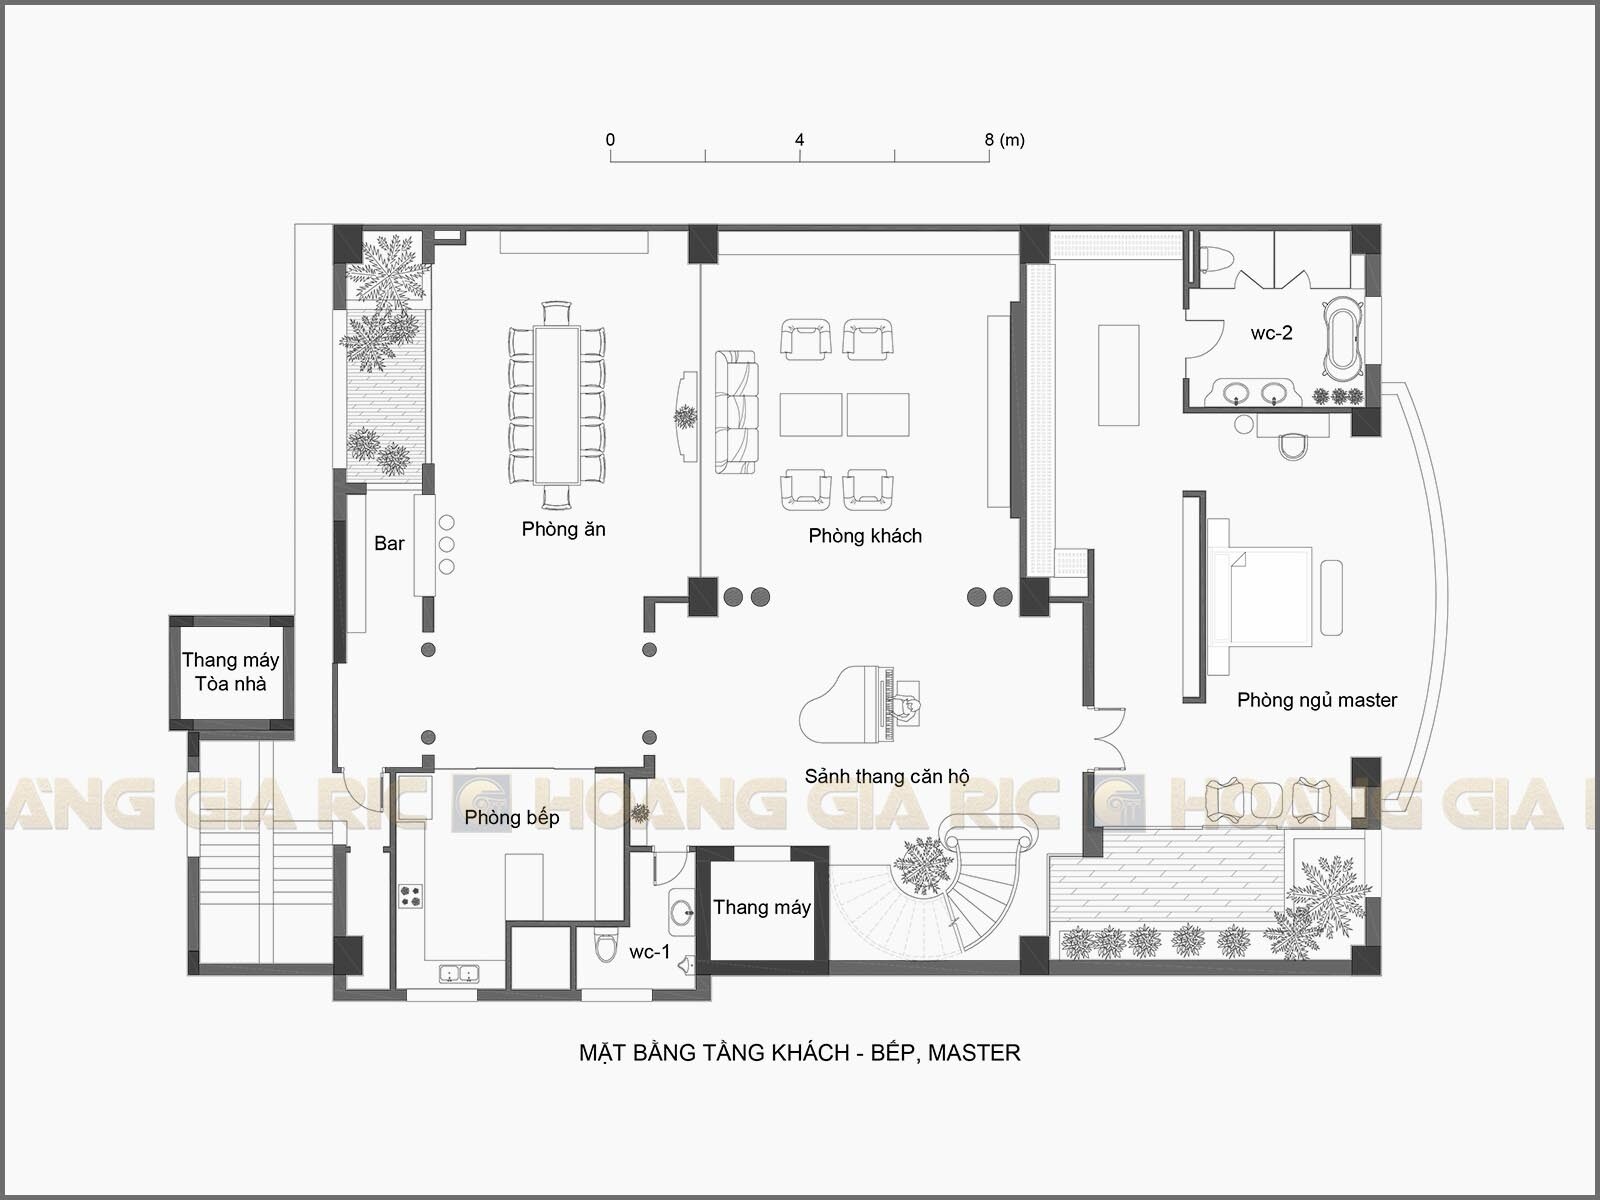 21ch01, mặt bằng căn hộ duplex, P. khách, bếp, ăn, master.